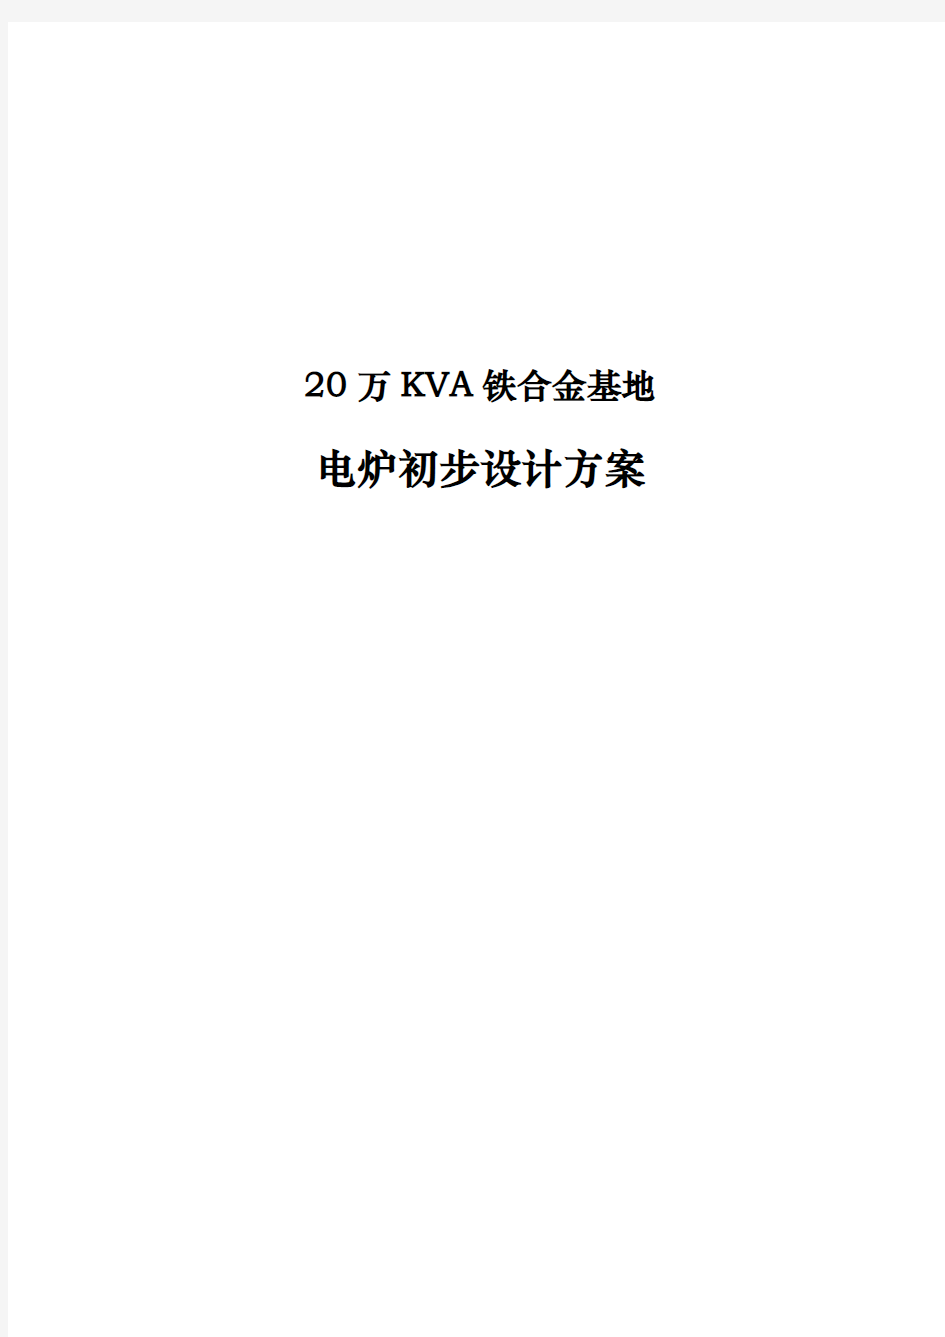 20万KVA铁合金基地电炉初步设计方案